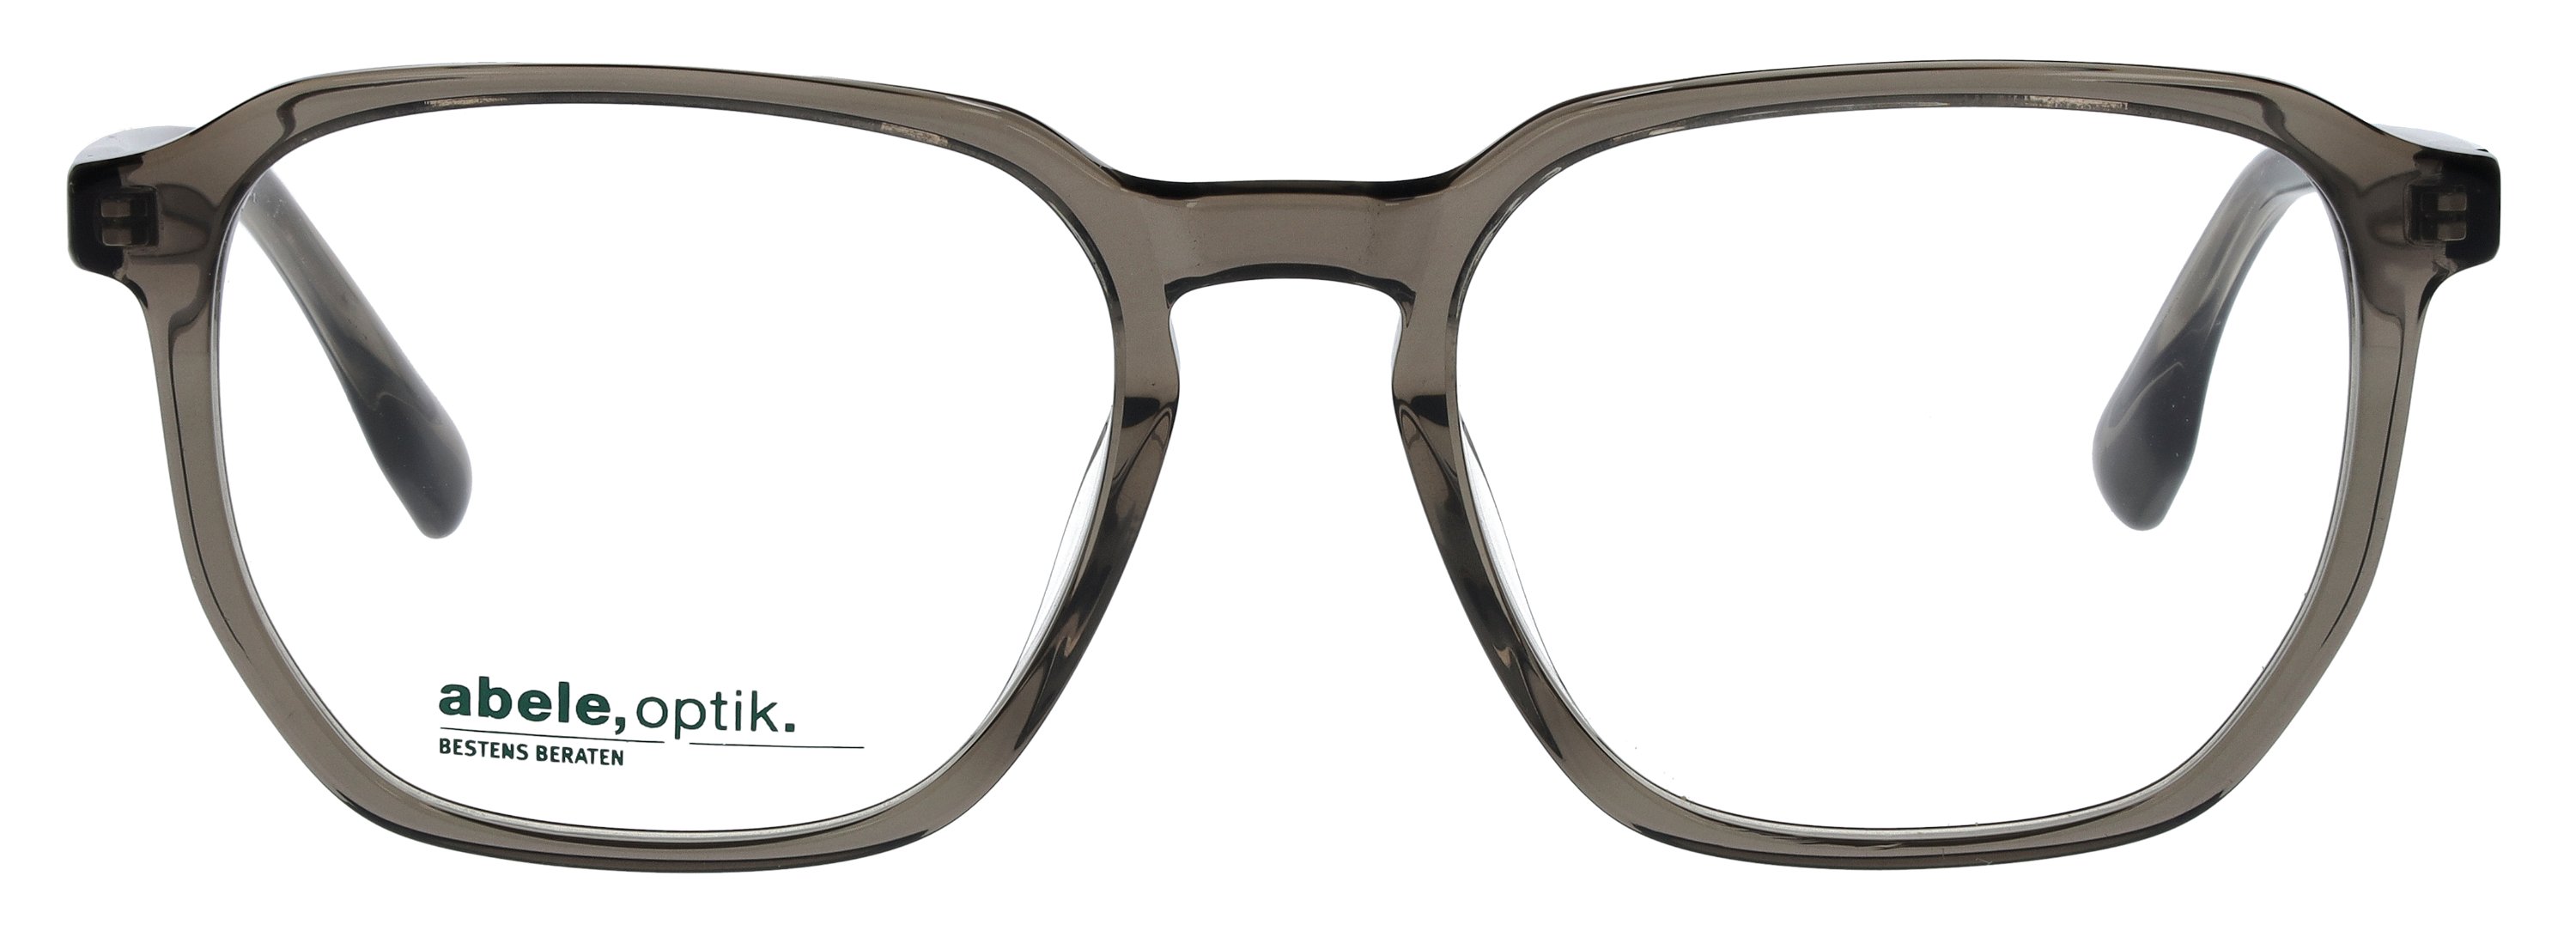 Das Bild zeigt die Korrektionsbrille 147961 von der Marke Abele Optik in grau transparent.